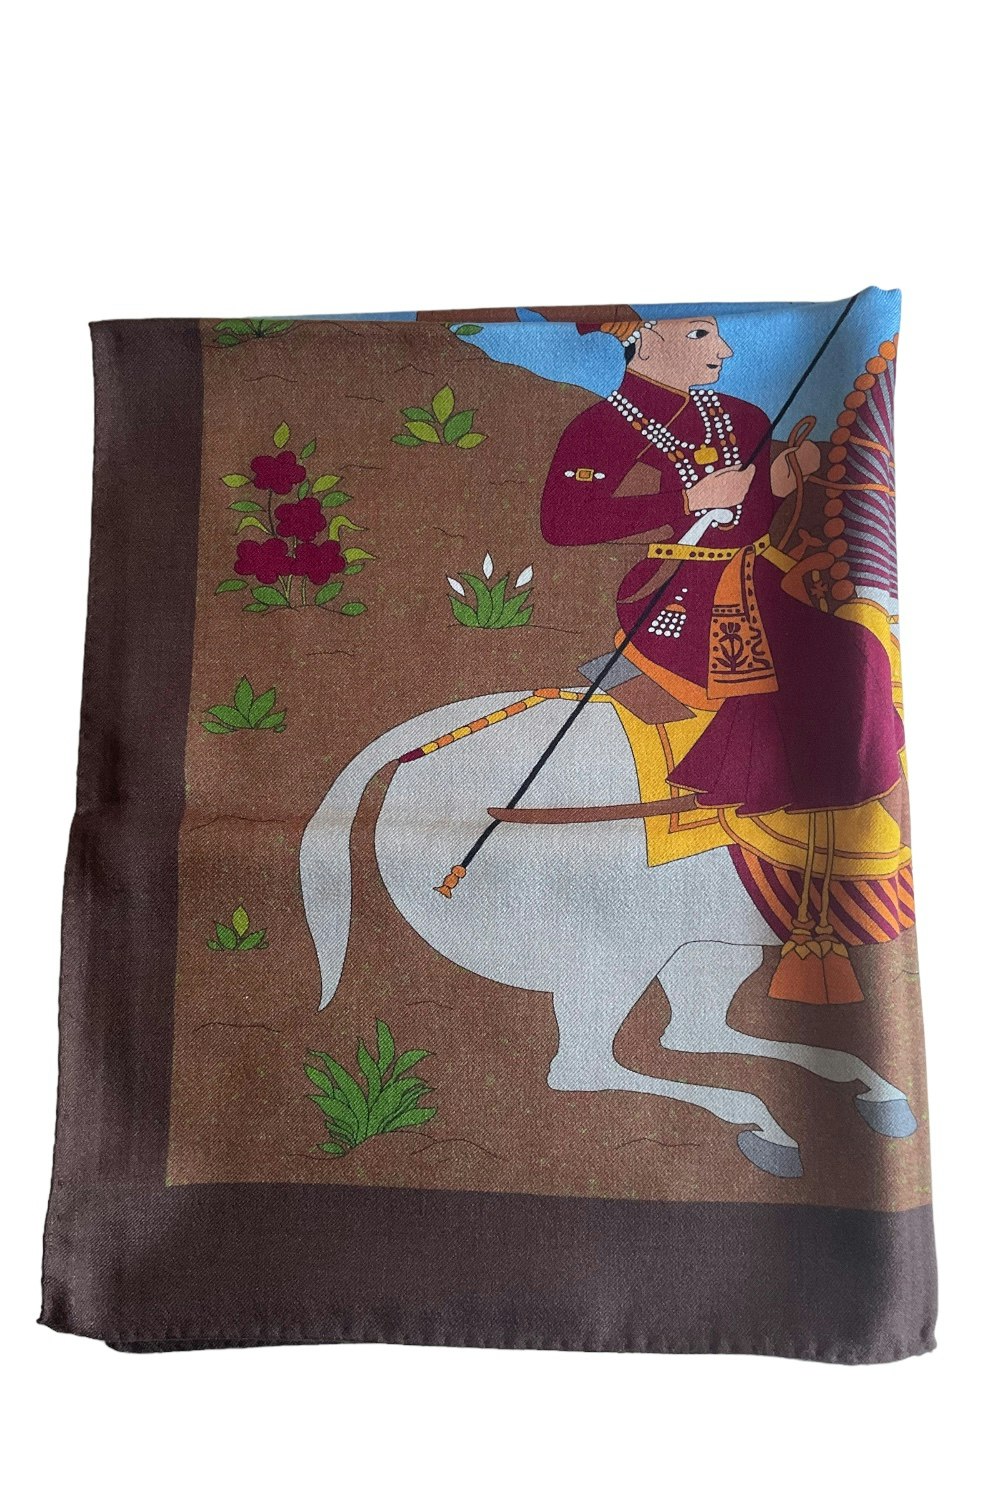 Oriental Knight Motif Printed Wool/Silk Scarf - Brown